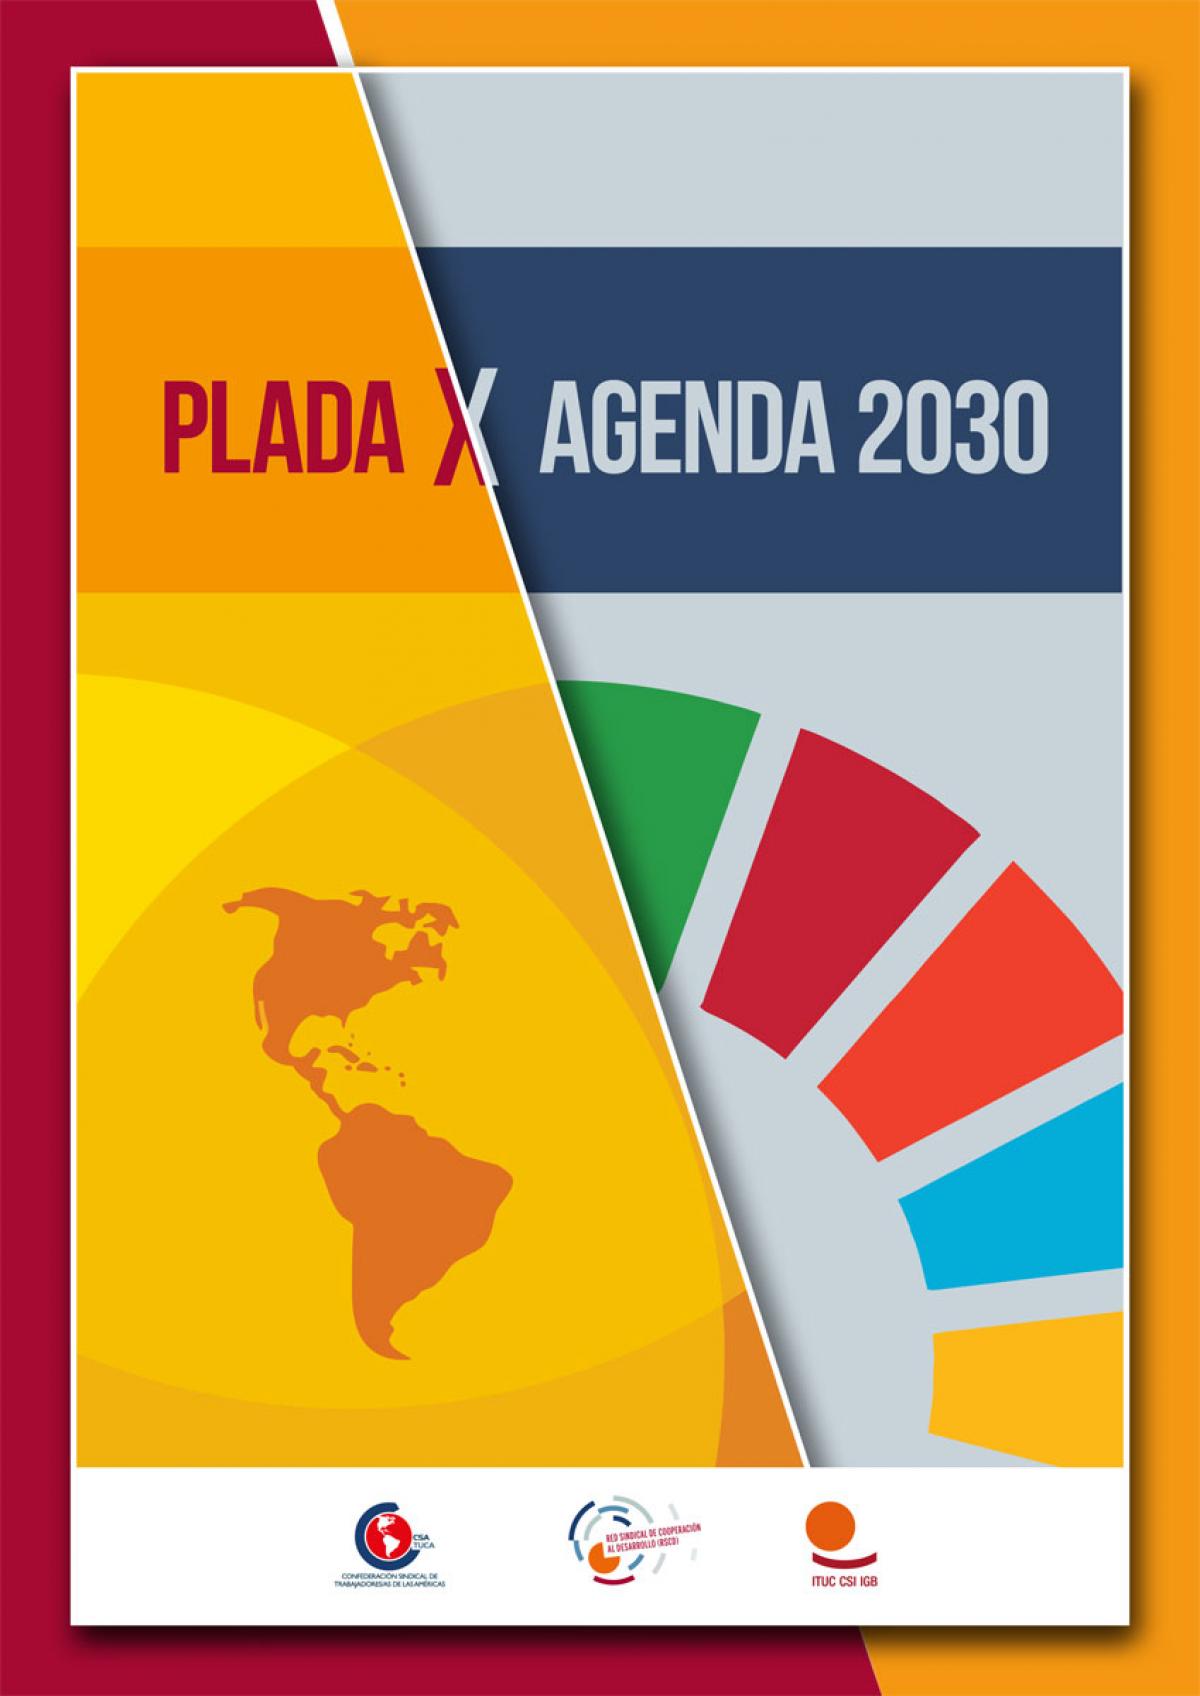 Lanzamos la publicación "PLADAxAgenda2030".